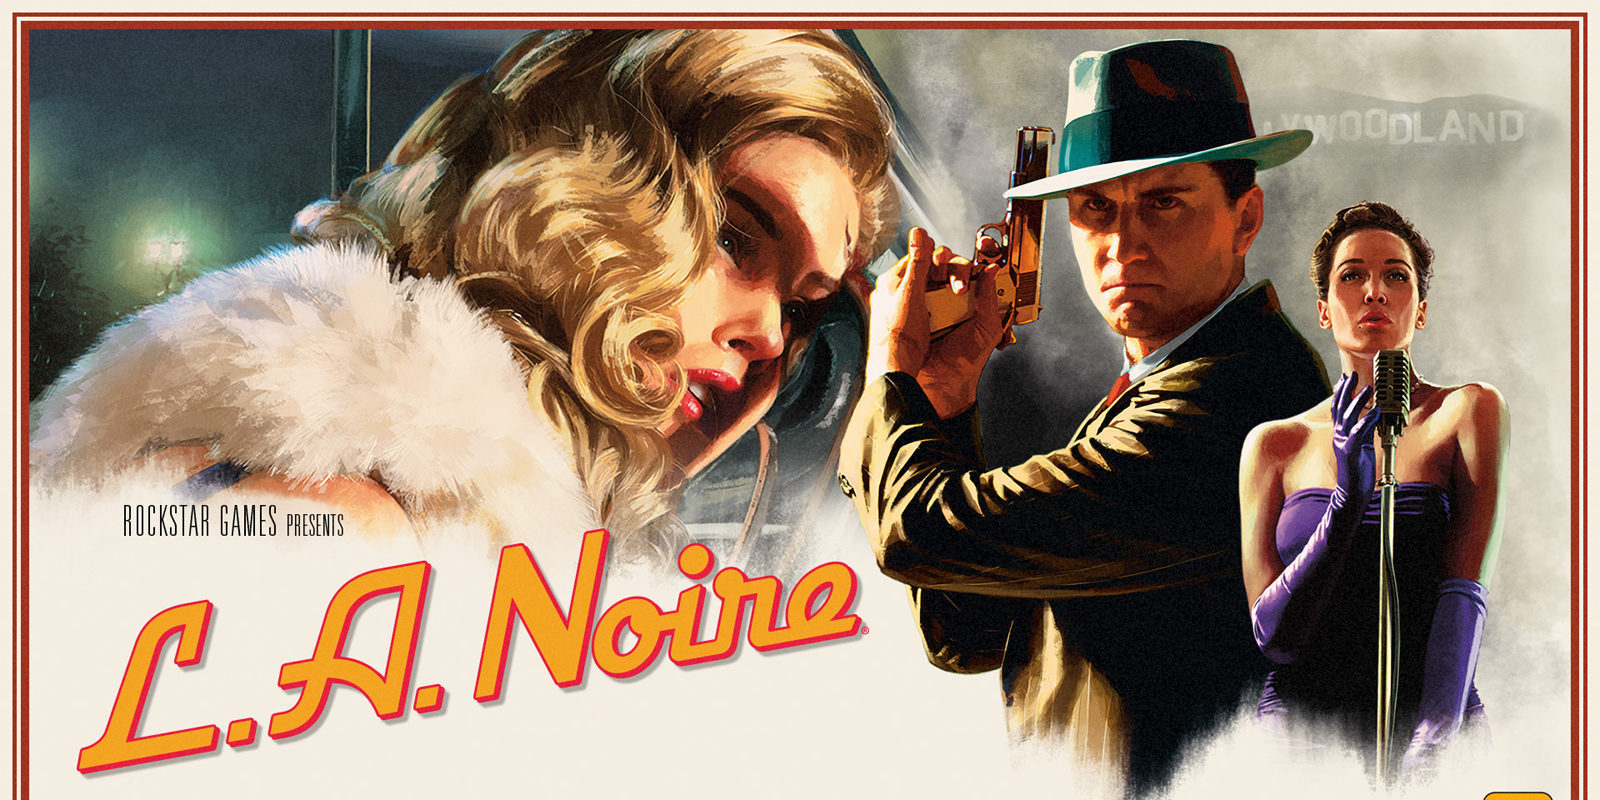 Impresiones de 'L.A. Noire' en Nintendo Switch, un port lleno de sorpresas